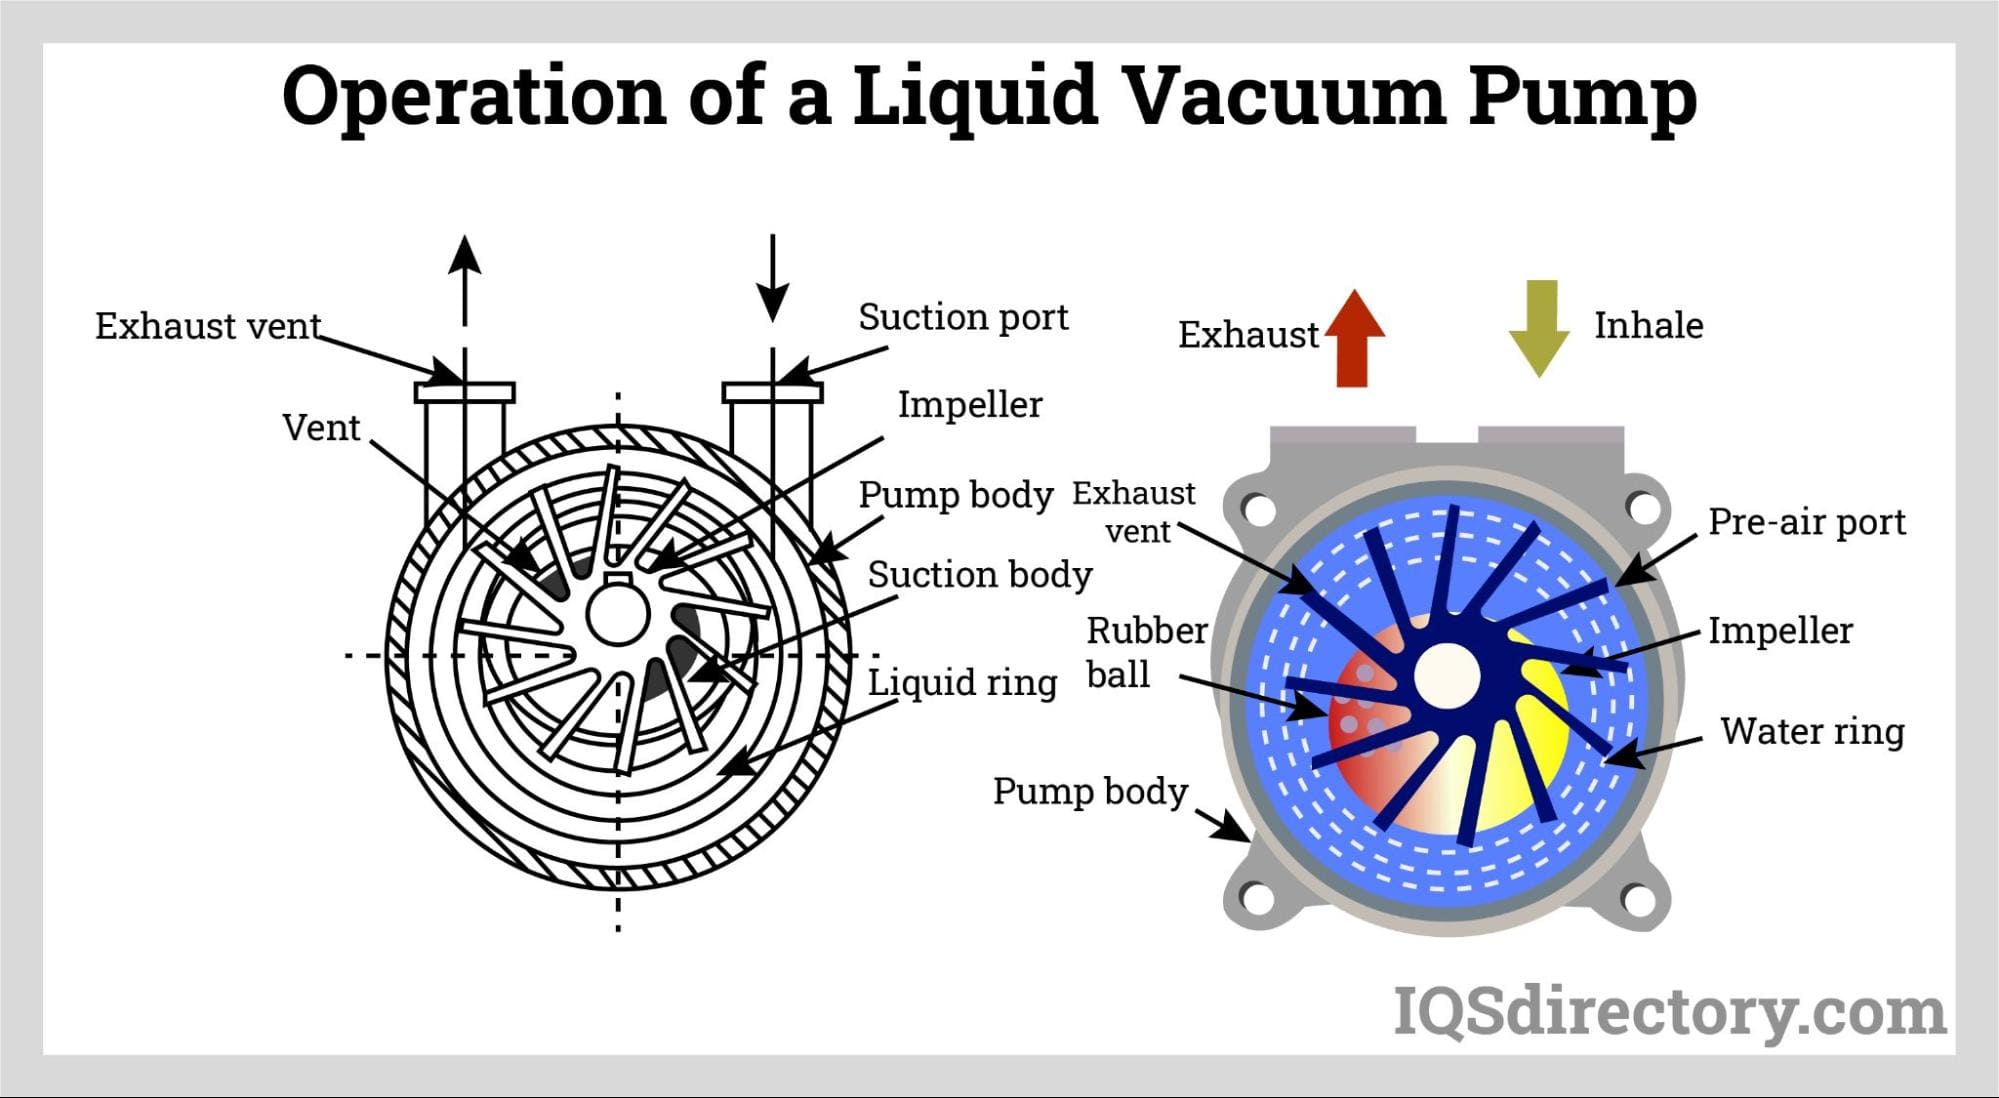 Operation of a Liquid Vacuum Pump